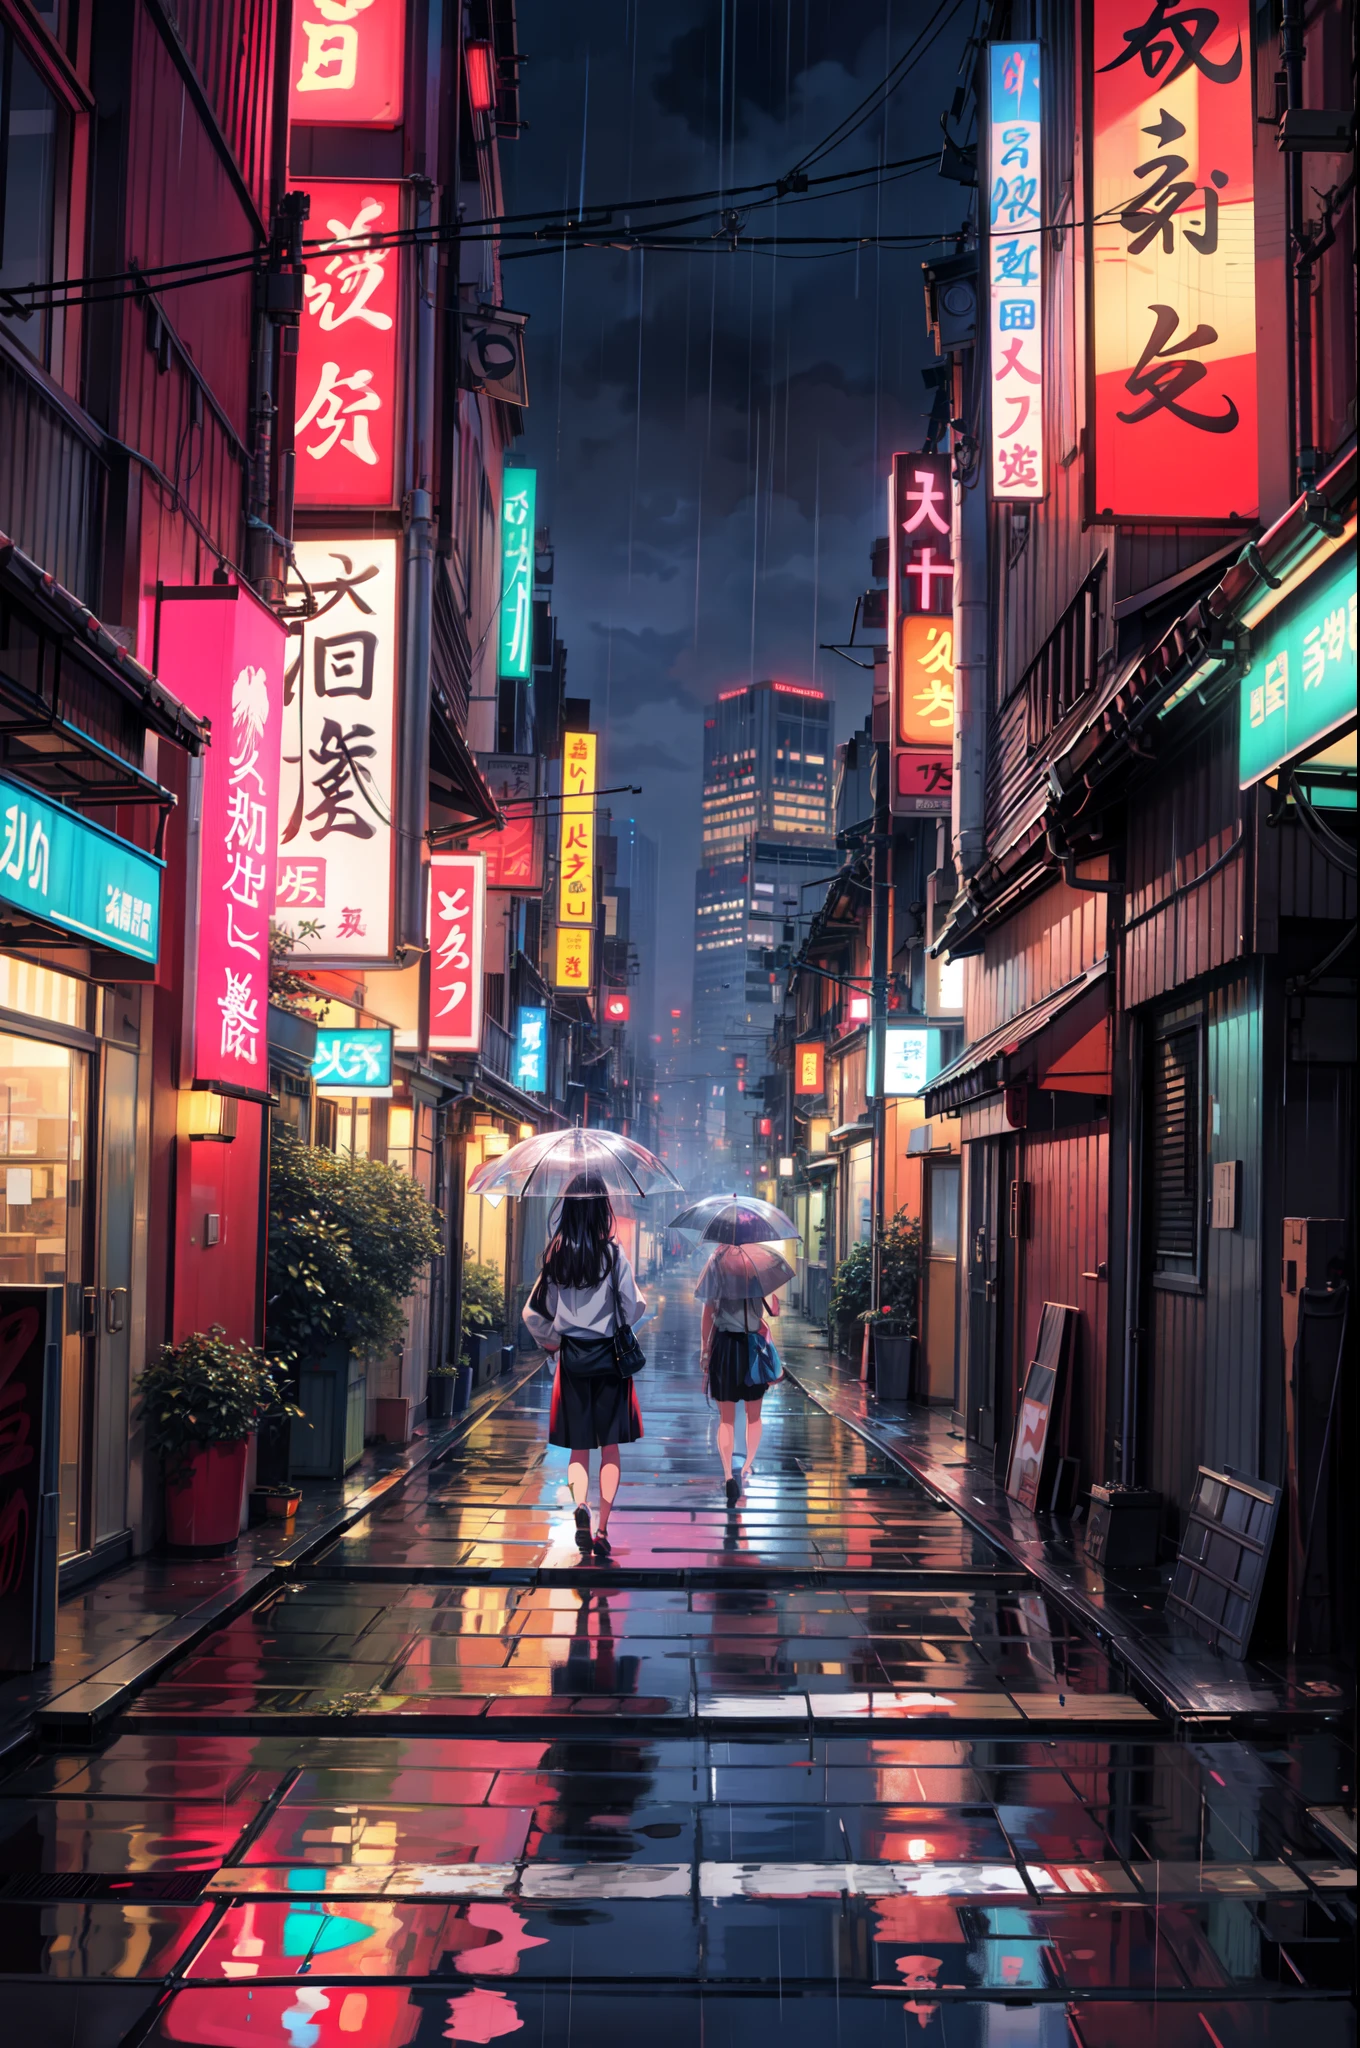 雨の日の東京の街の絵, 路地 , 美しい景色, 降雨,濡れた舗装道路 ((輝く表情)),高解像度, 高品質, 水の反射, 茂み,4k 高解像度, 雲,beautiful art u高解像度 4 k, 美しいアートワークのイラスト, 美しいデジタル絵画, 非常に詳細なデジタル絵画, 美しいデジタルアート, 詳細な絵画 4k, 非常に詳細なデジタル絵画, 豊かな絵のような色彩, ゴージャスなデジタルペインティング